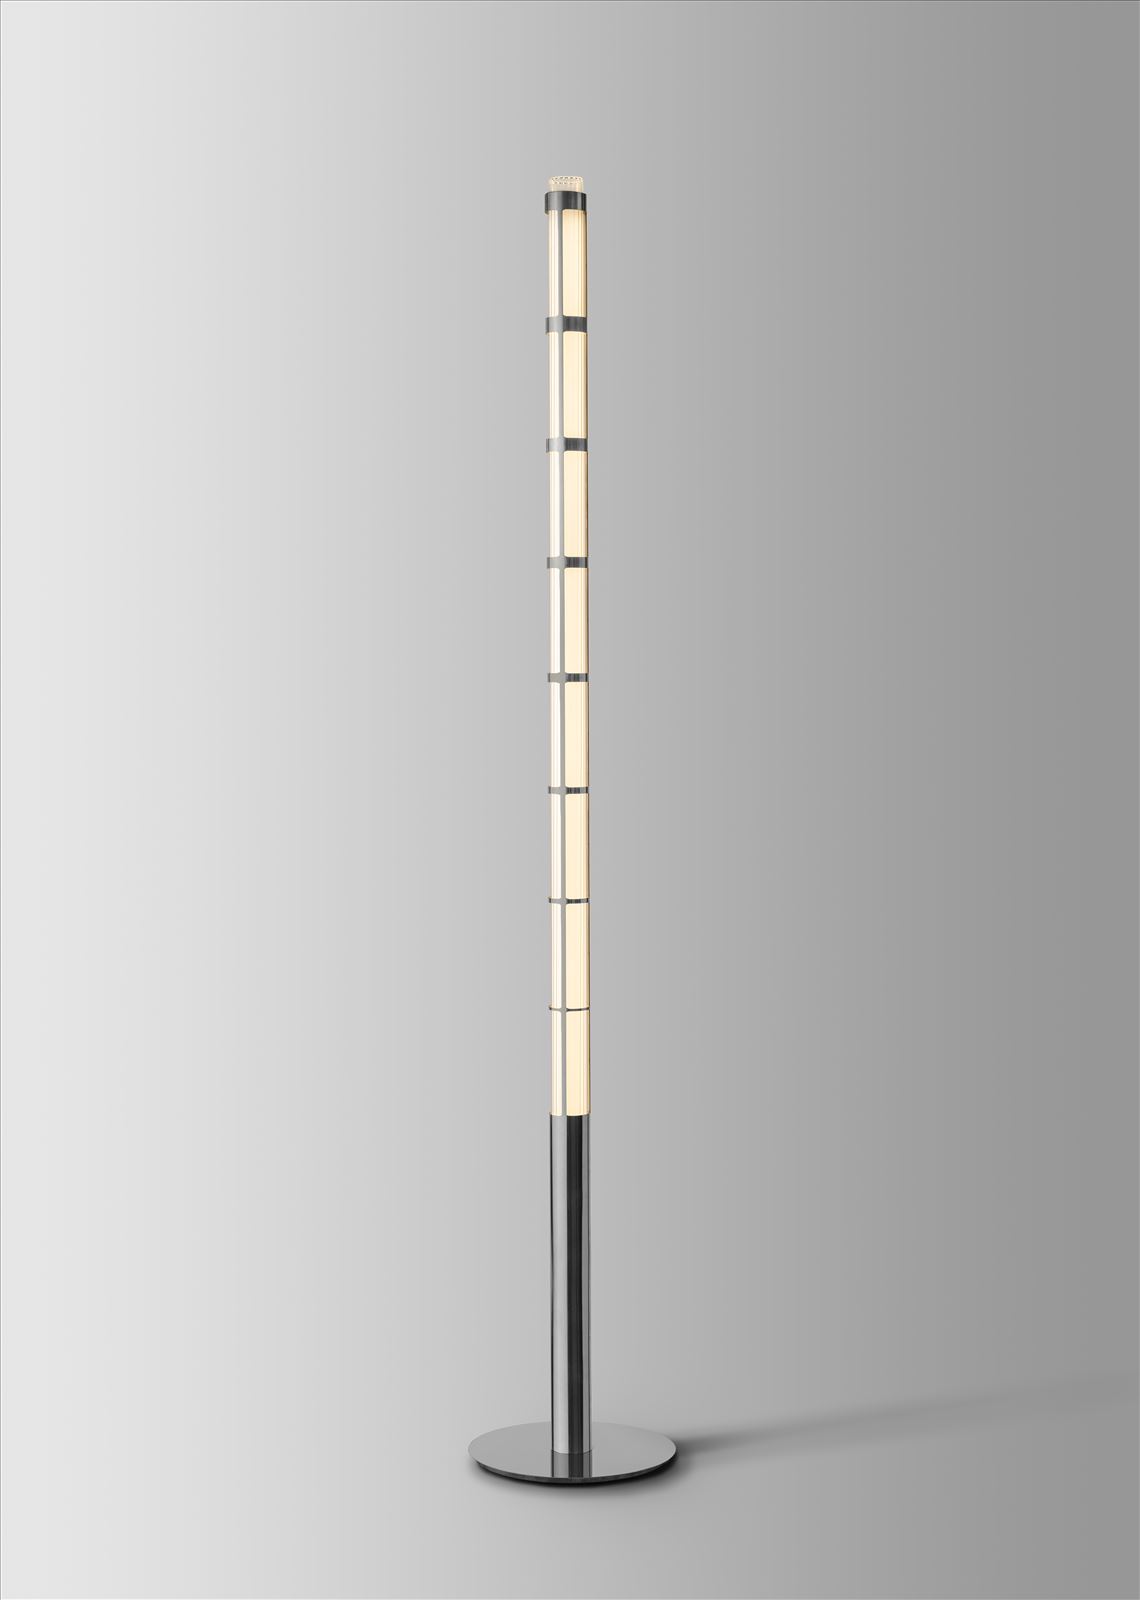 גופי תאורה מקטגוריית: מנורות עמידה  ,שם המוצר: LINEOR